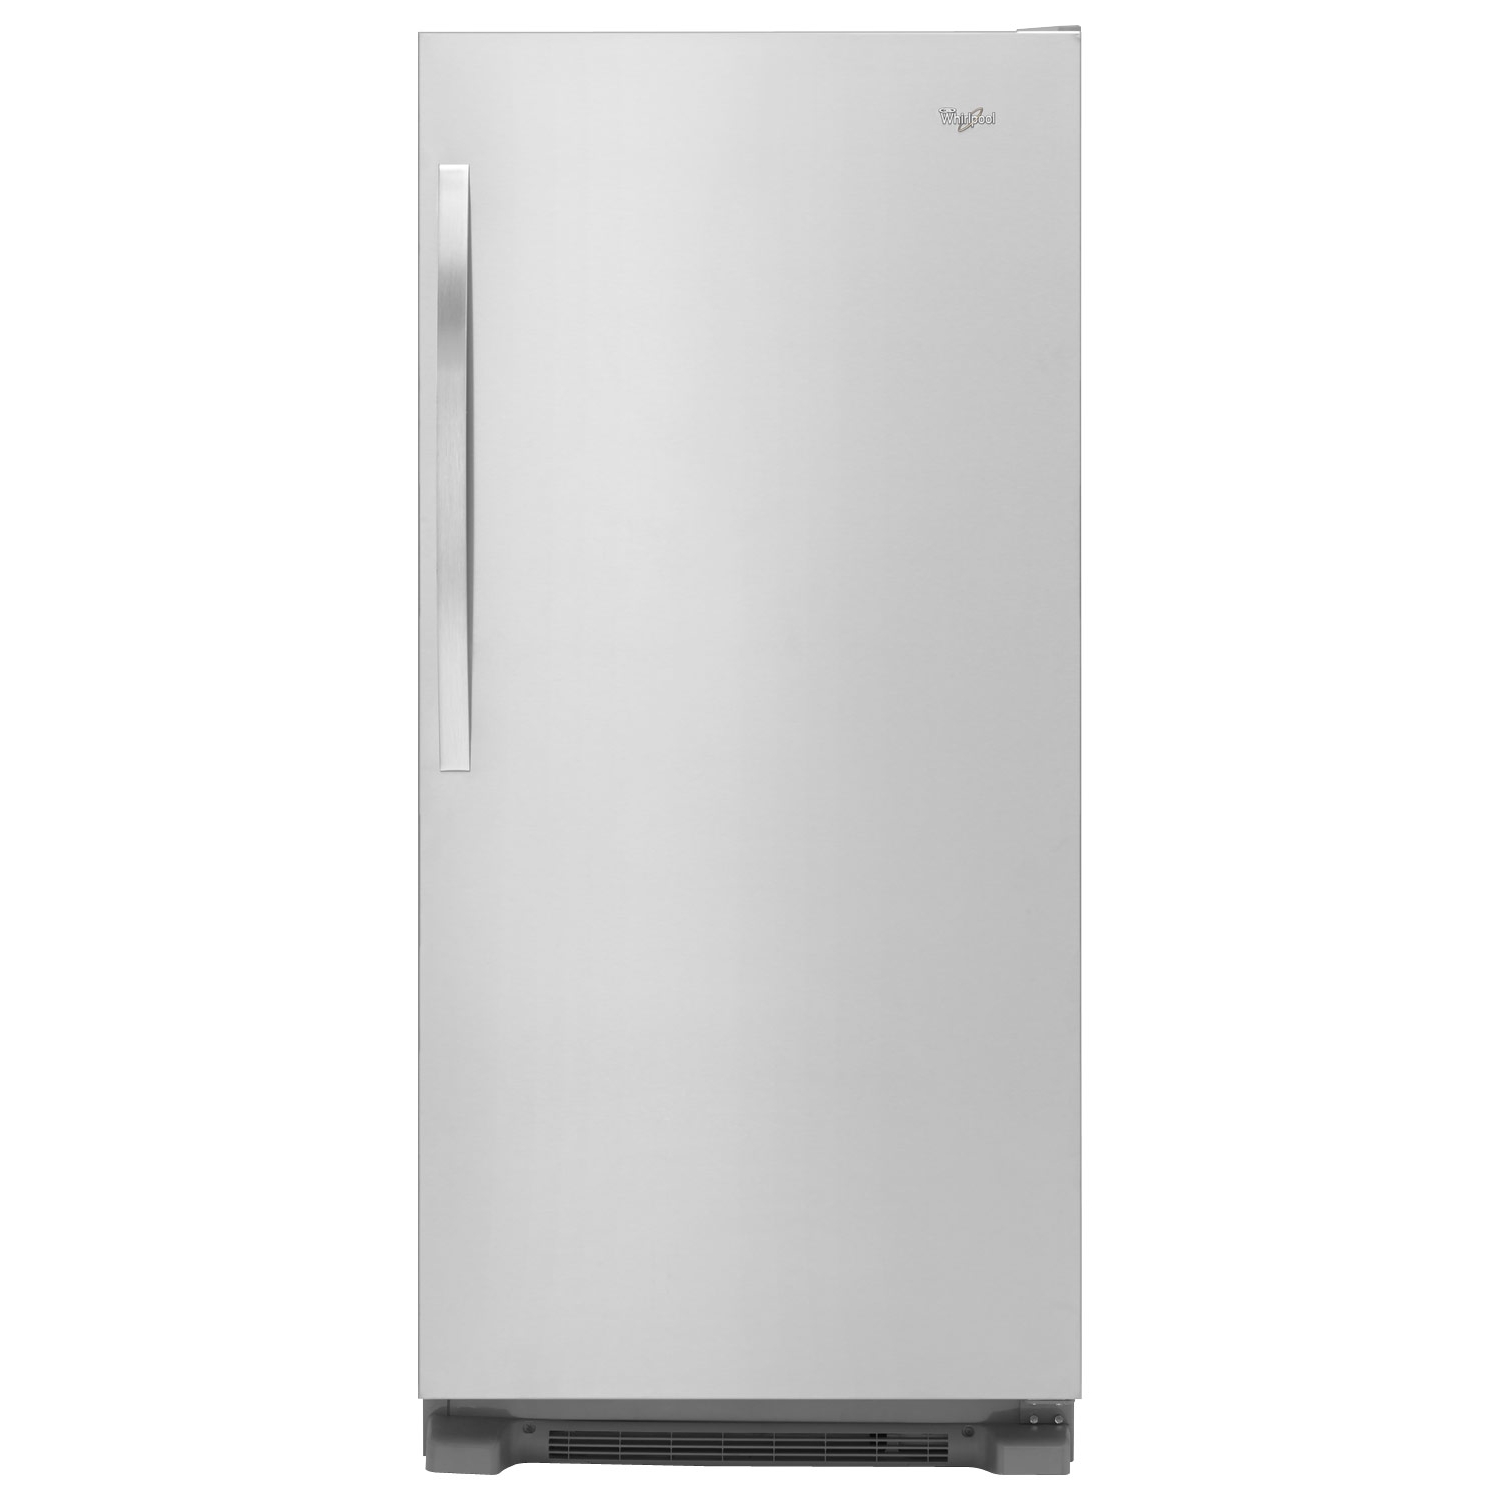 Comprar Whirlpool Refrigerador WSR57R18DM